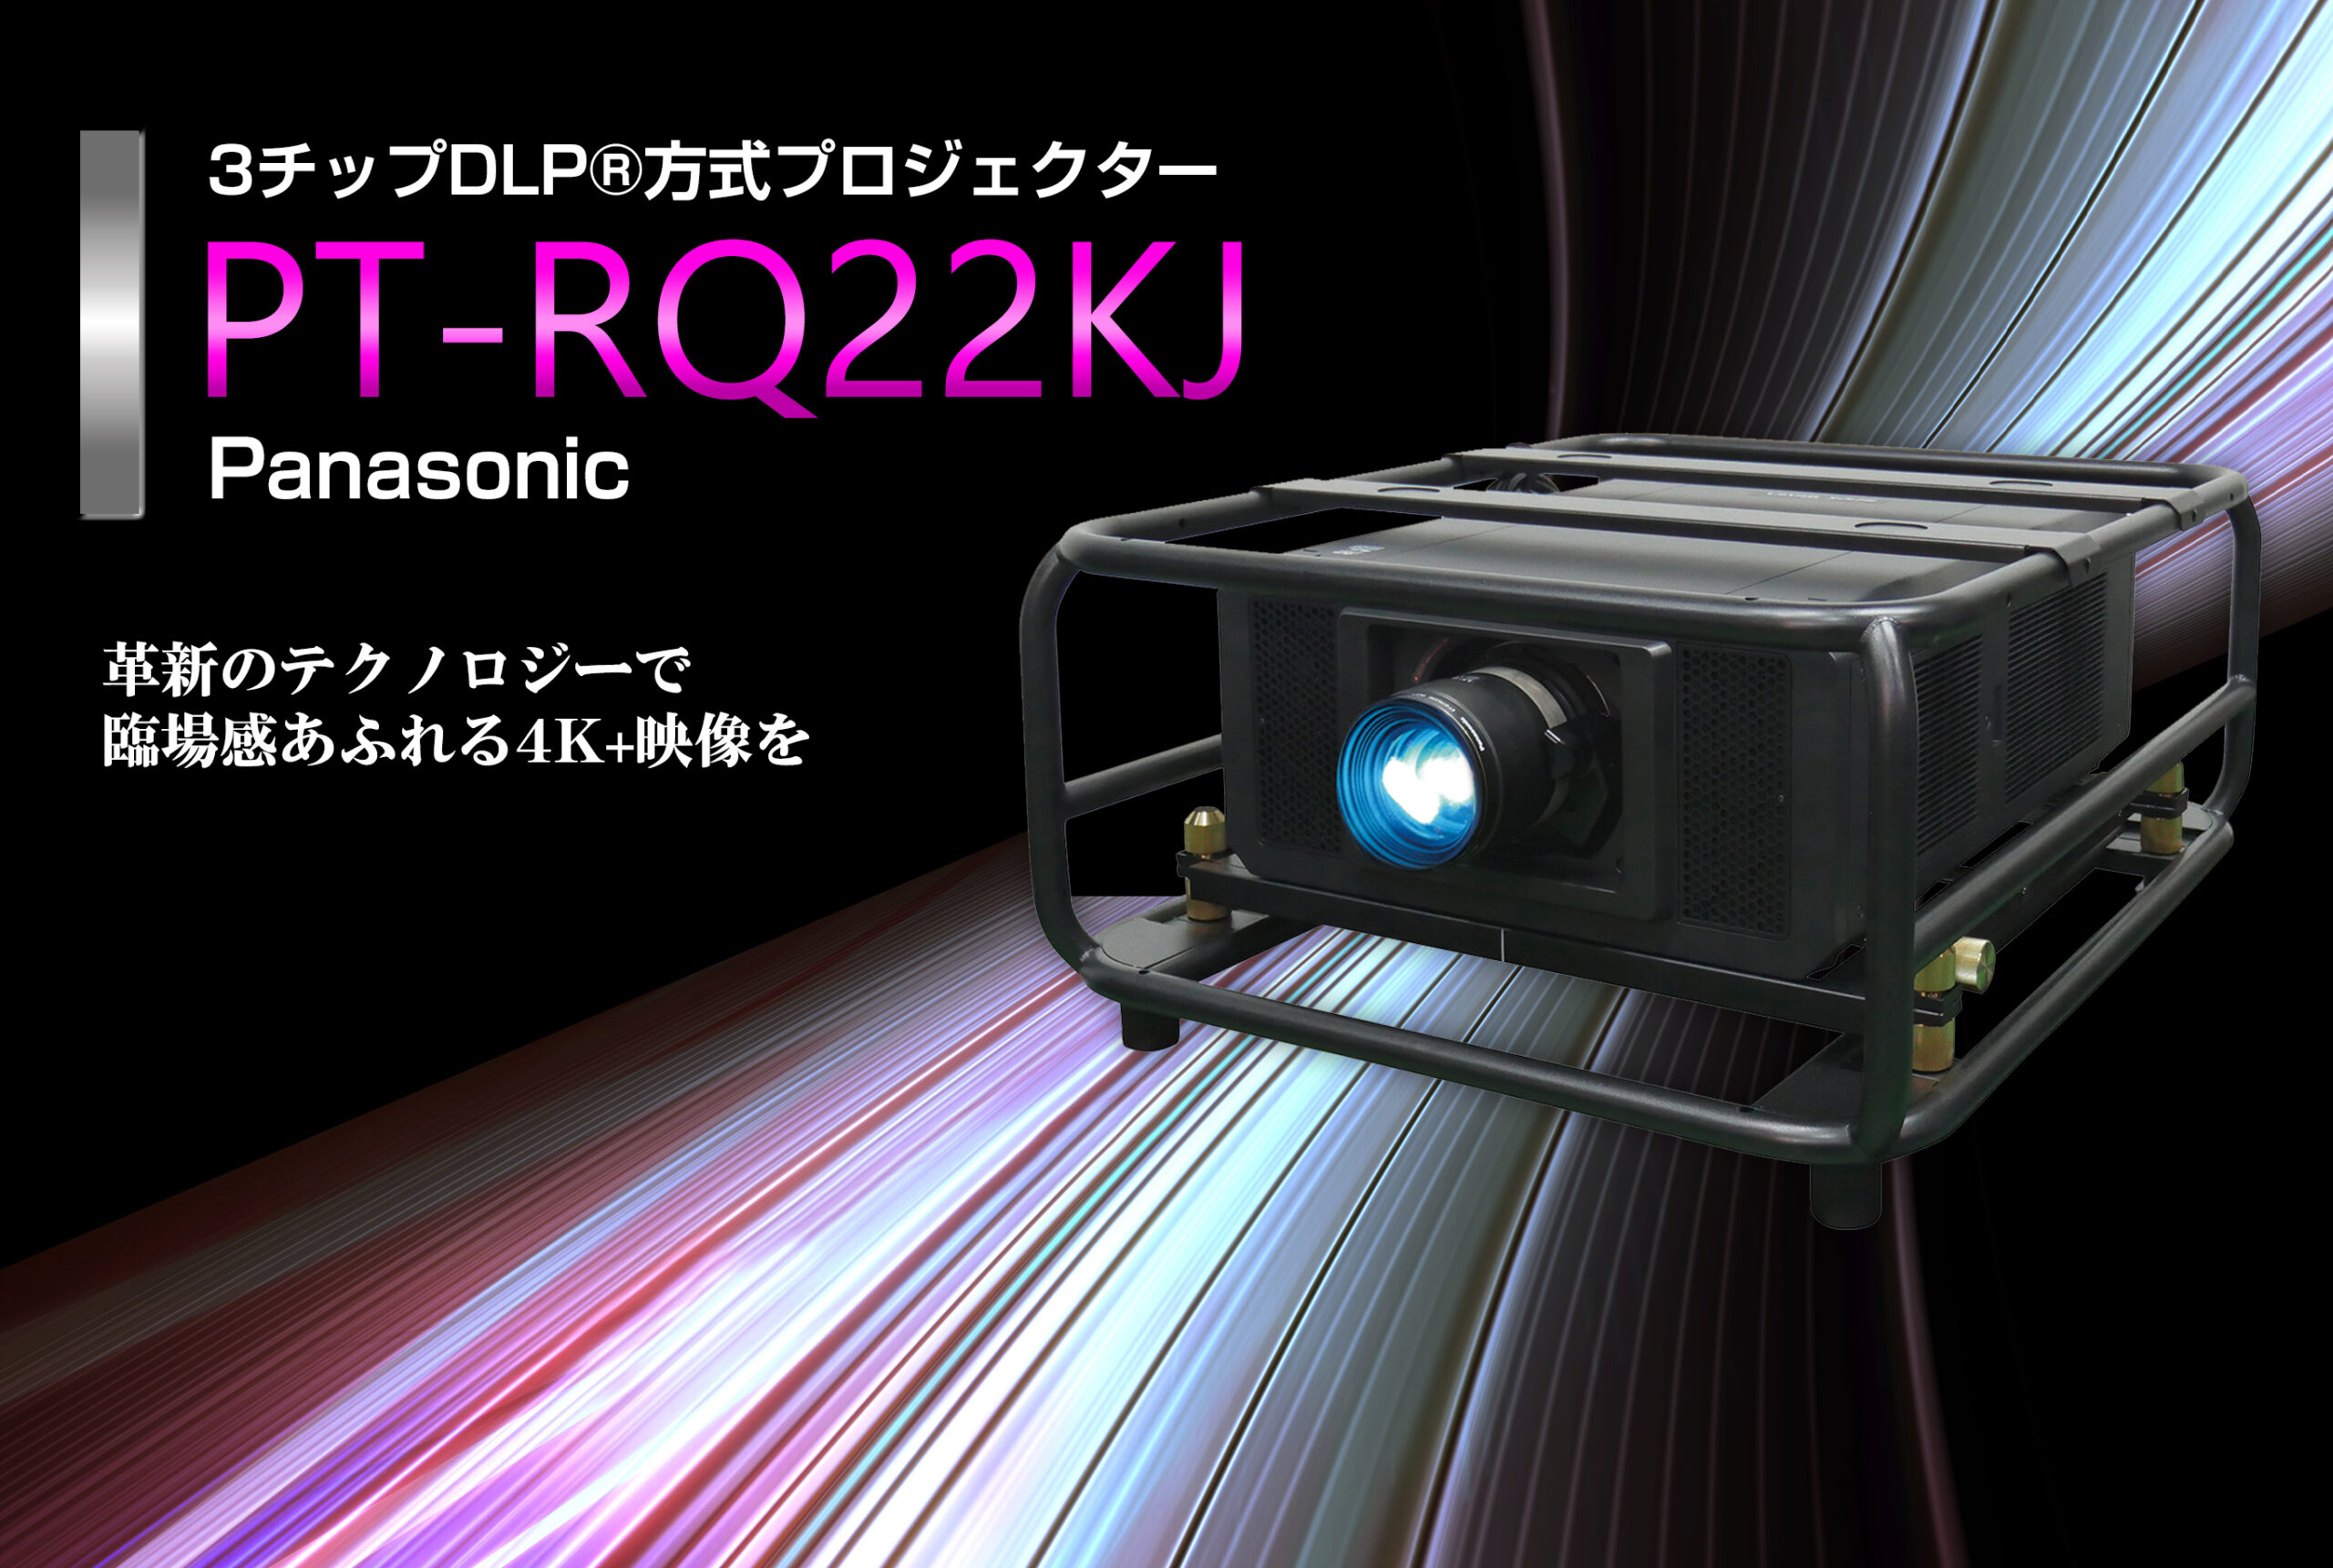 PT-RQ22K